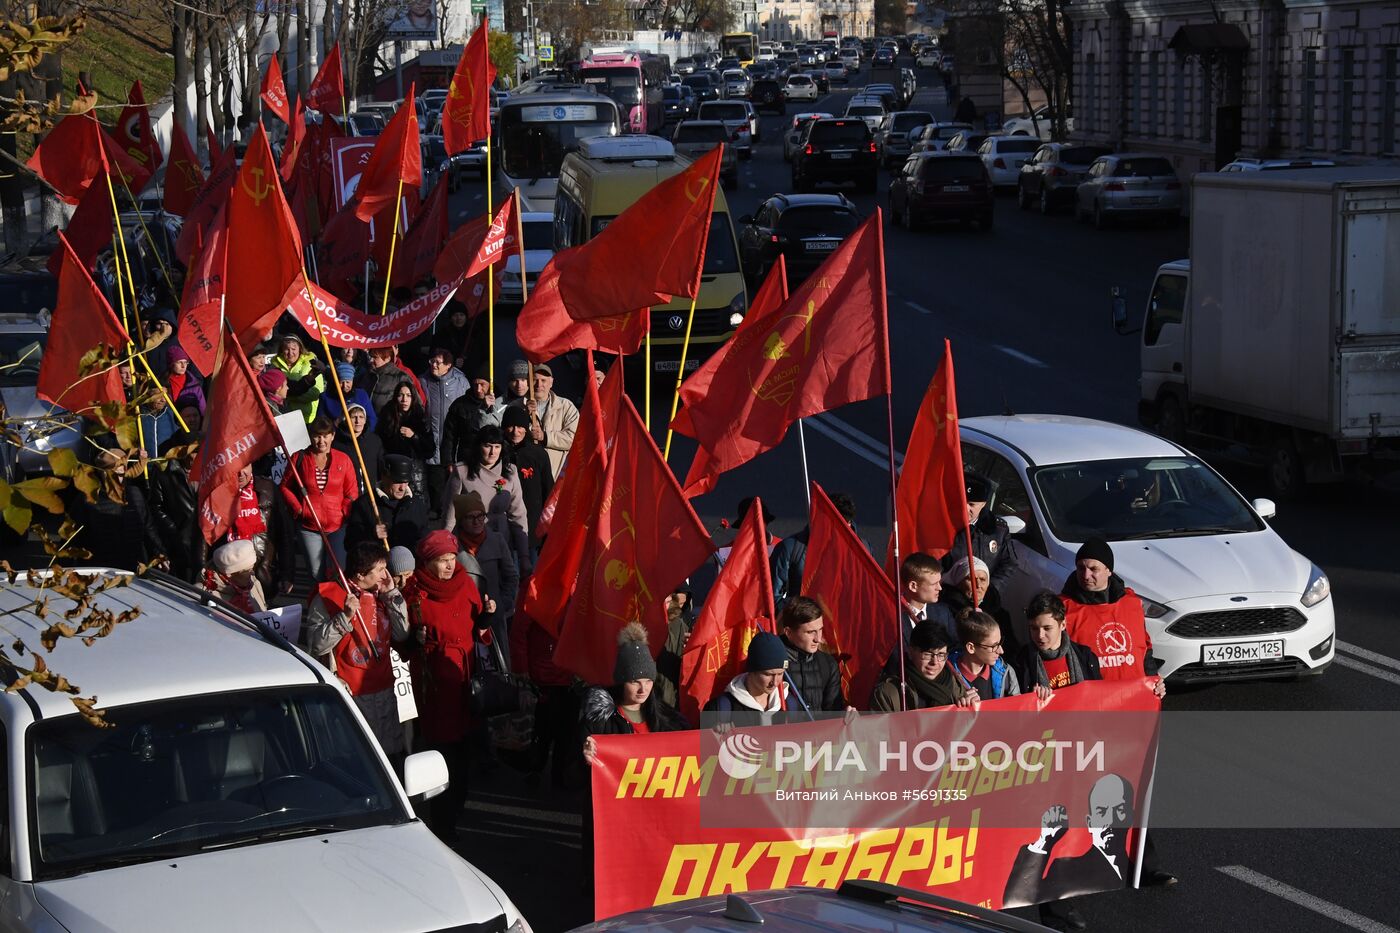 Шествия и митинги в городах России по случаю 101-й годовщины Октябрьской революции